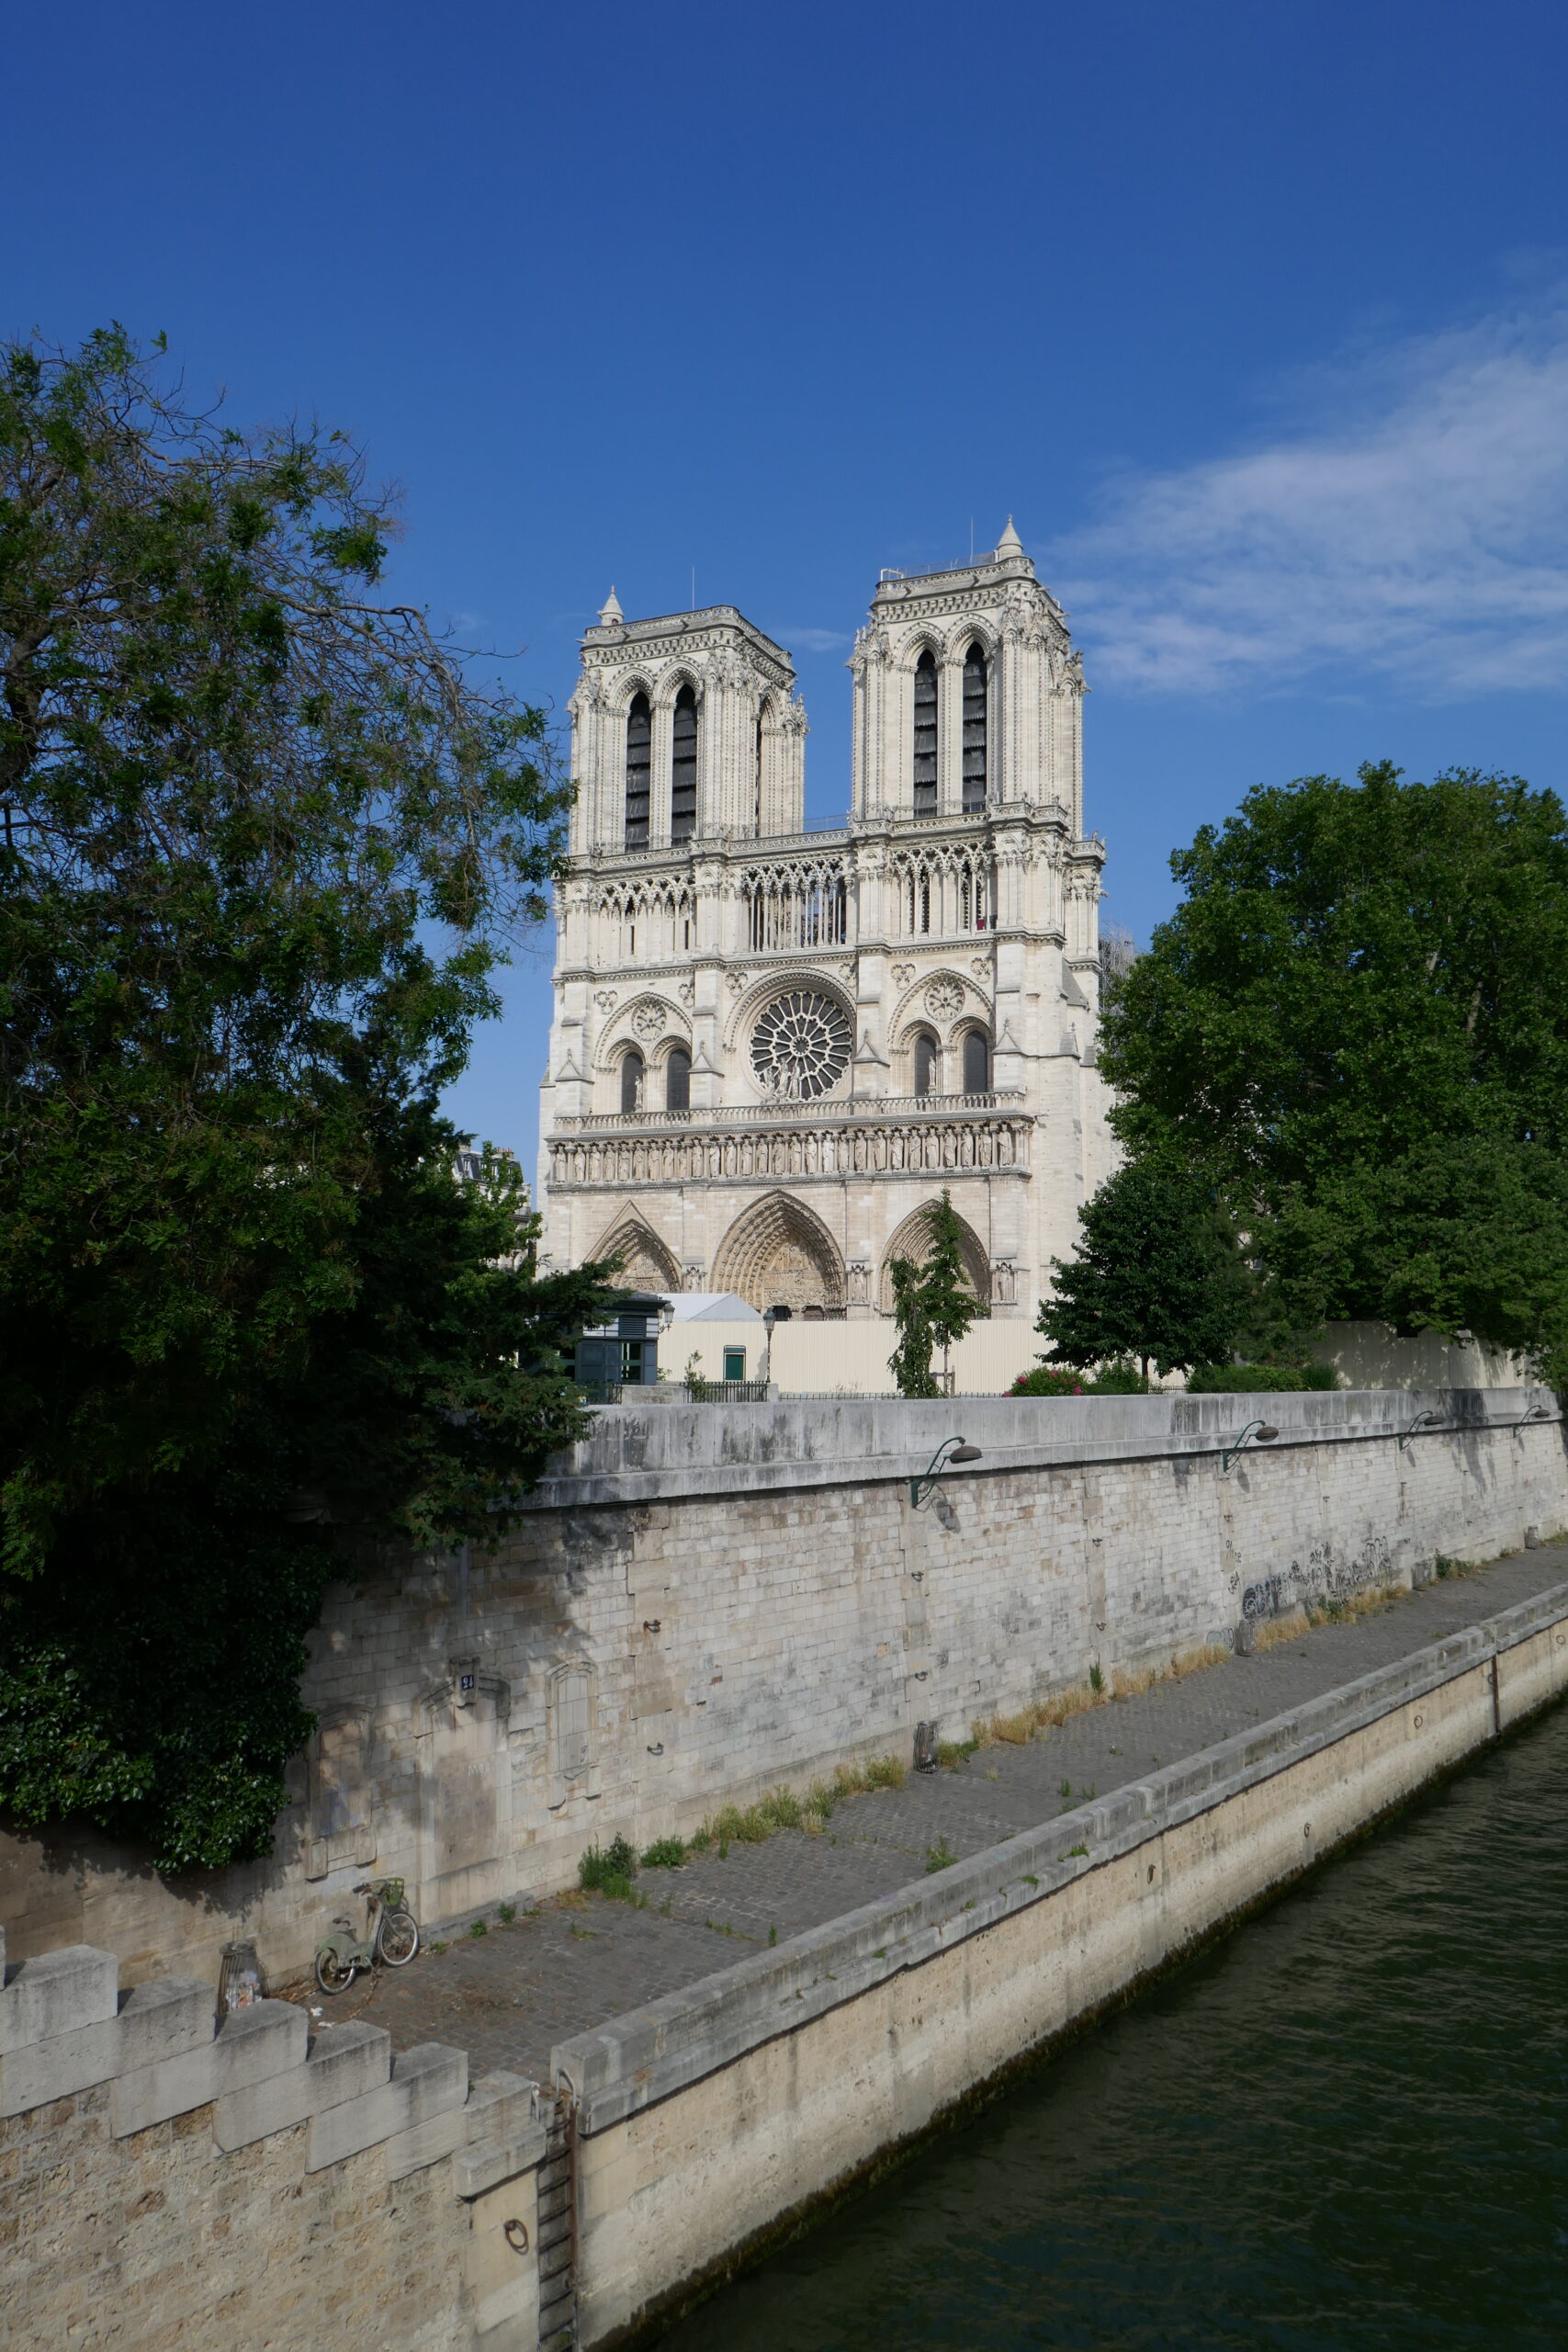 Notre Dame Cathedral, Paris, June 18, 2019